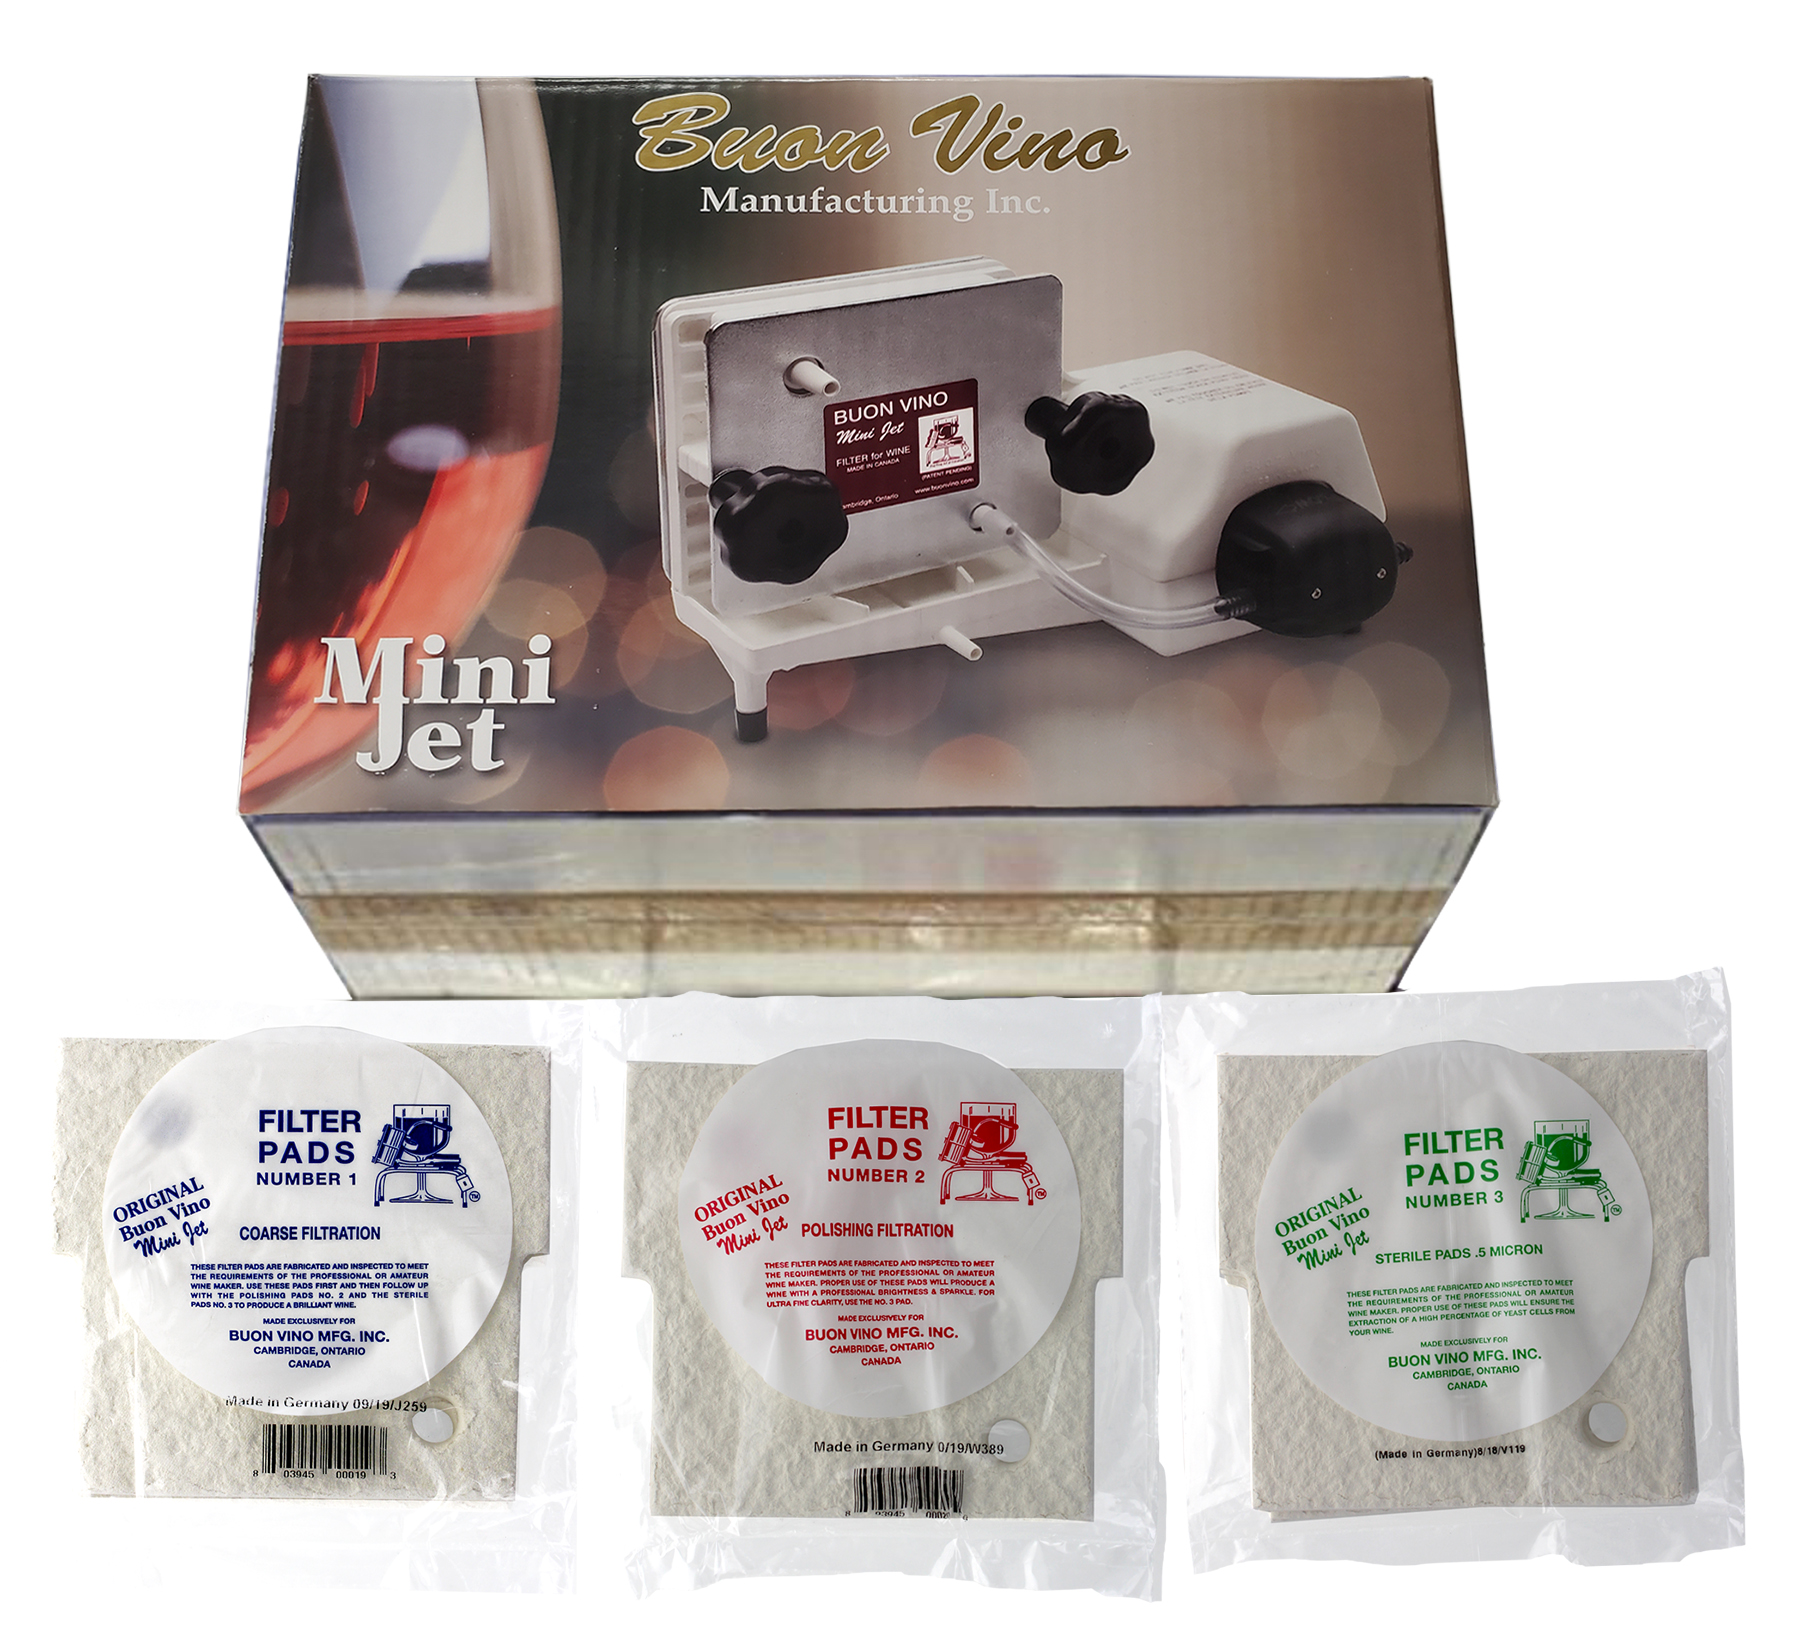 Home Brew Ohio BUON Vino Complete Mini Jet Wine Filter